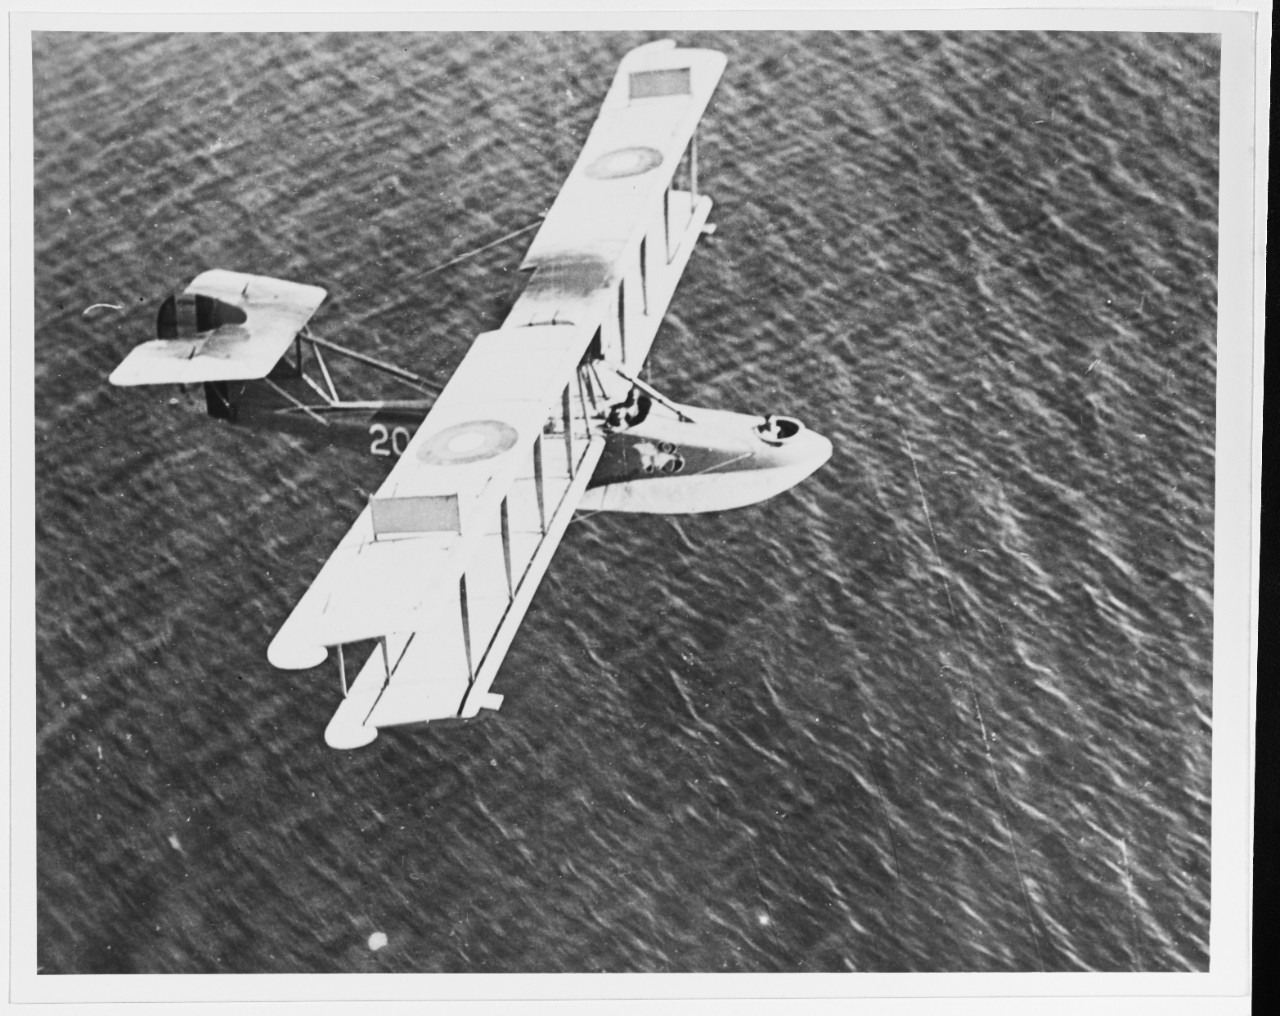 Curtiss HS-2L